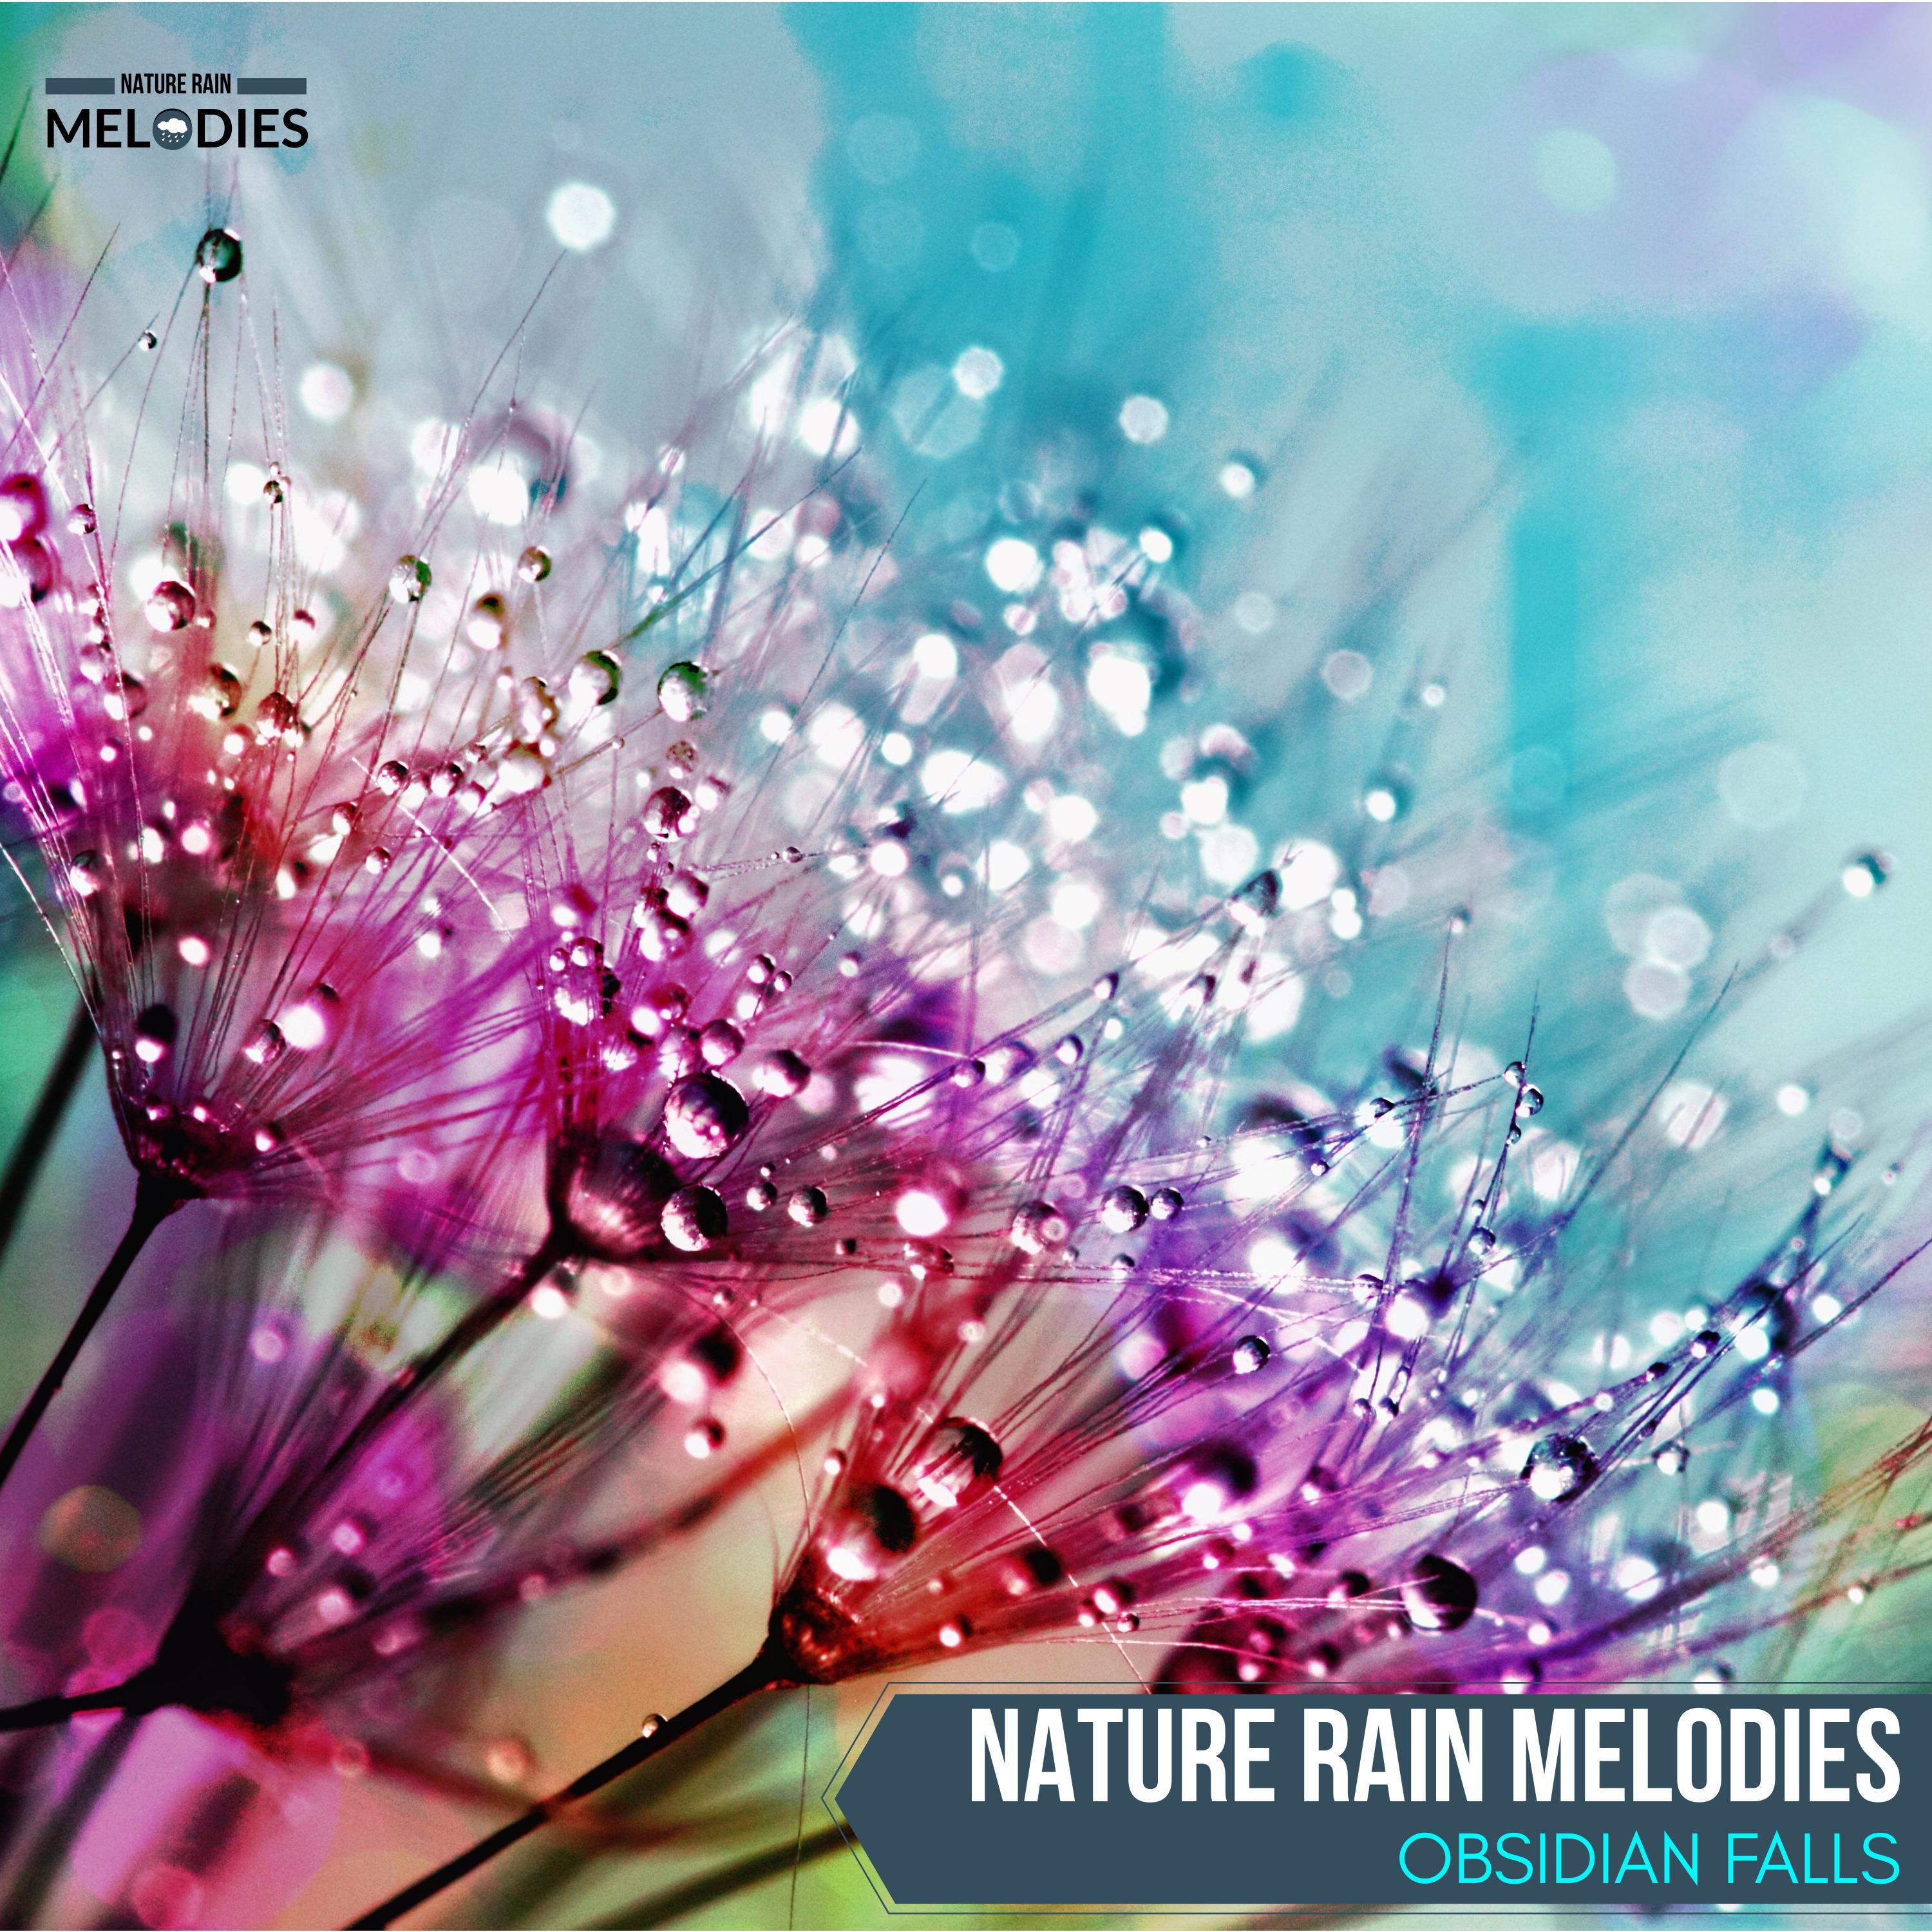 Blossom Drizzle Nature Sounds - Fierce Rain